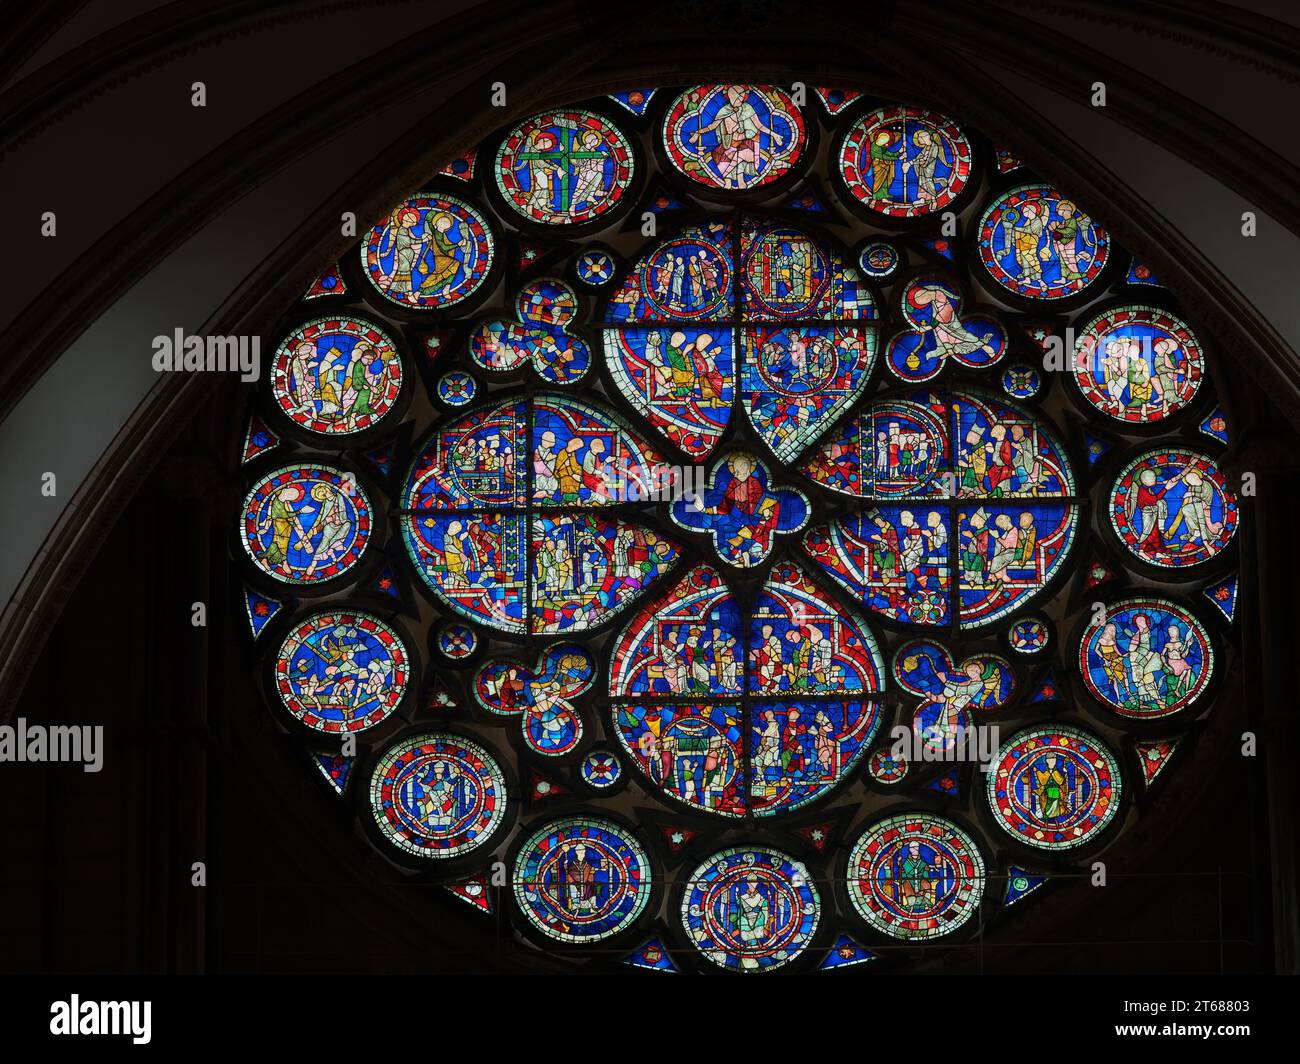 Das Dekanat-Auge, ein Buntglasfenster aus dem frühen 13. Jahrhundert, das das zweite Kommen Christi und das Jüngste Gericht veranschaulicht. Stockfoto